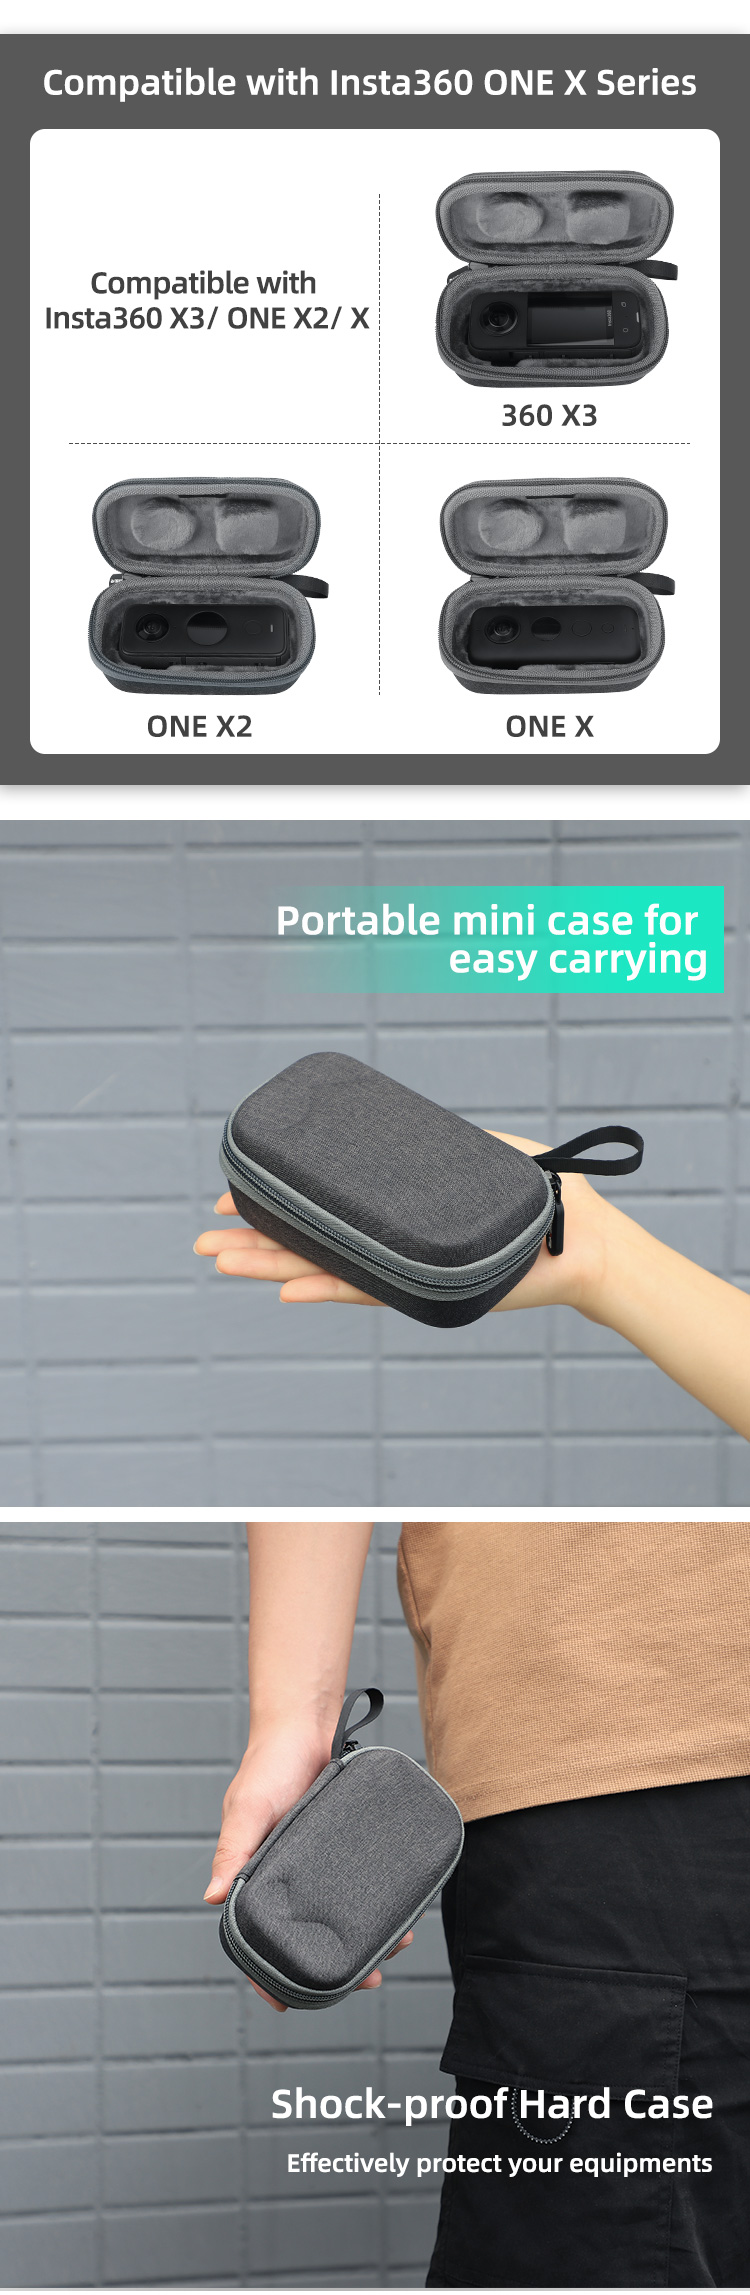 Sunnylife Carrying Case Combo Bag Hard Travel Case Large Capacity